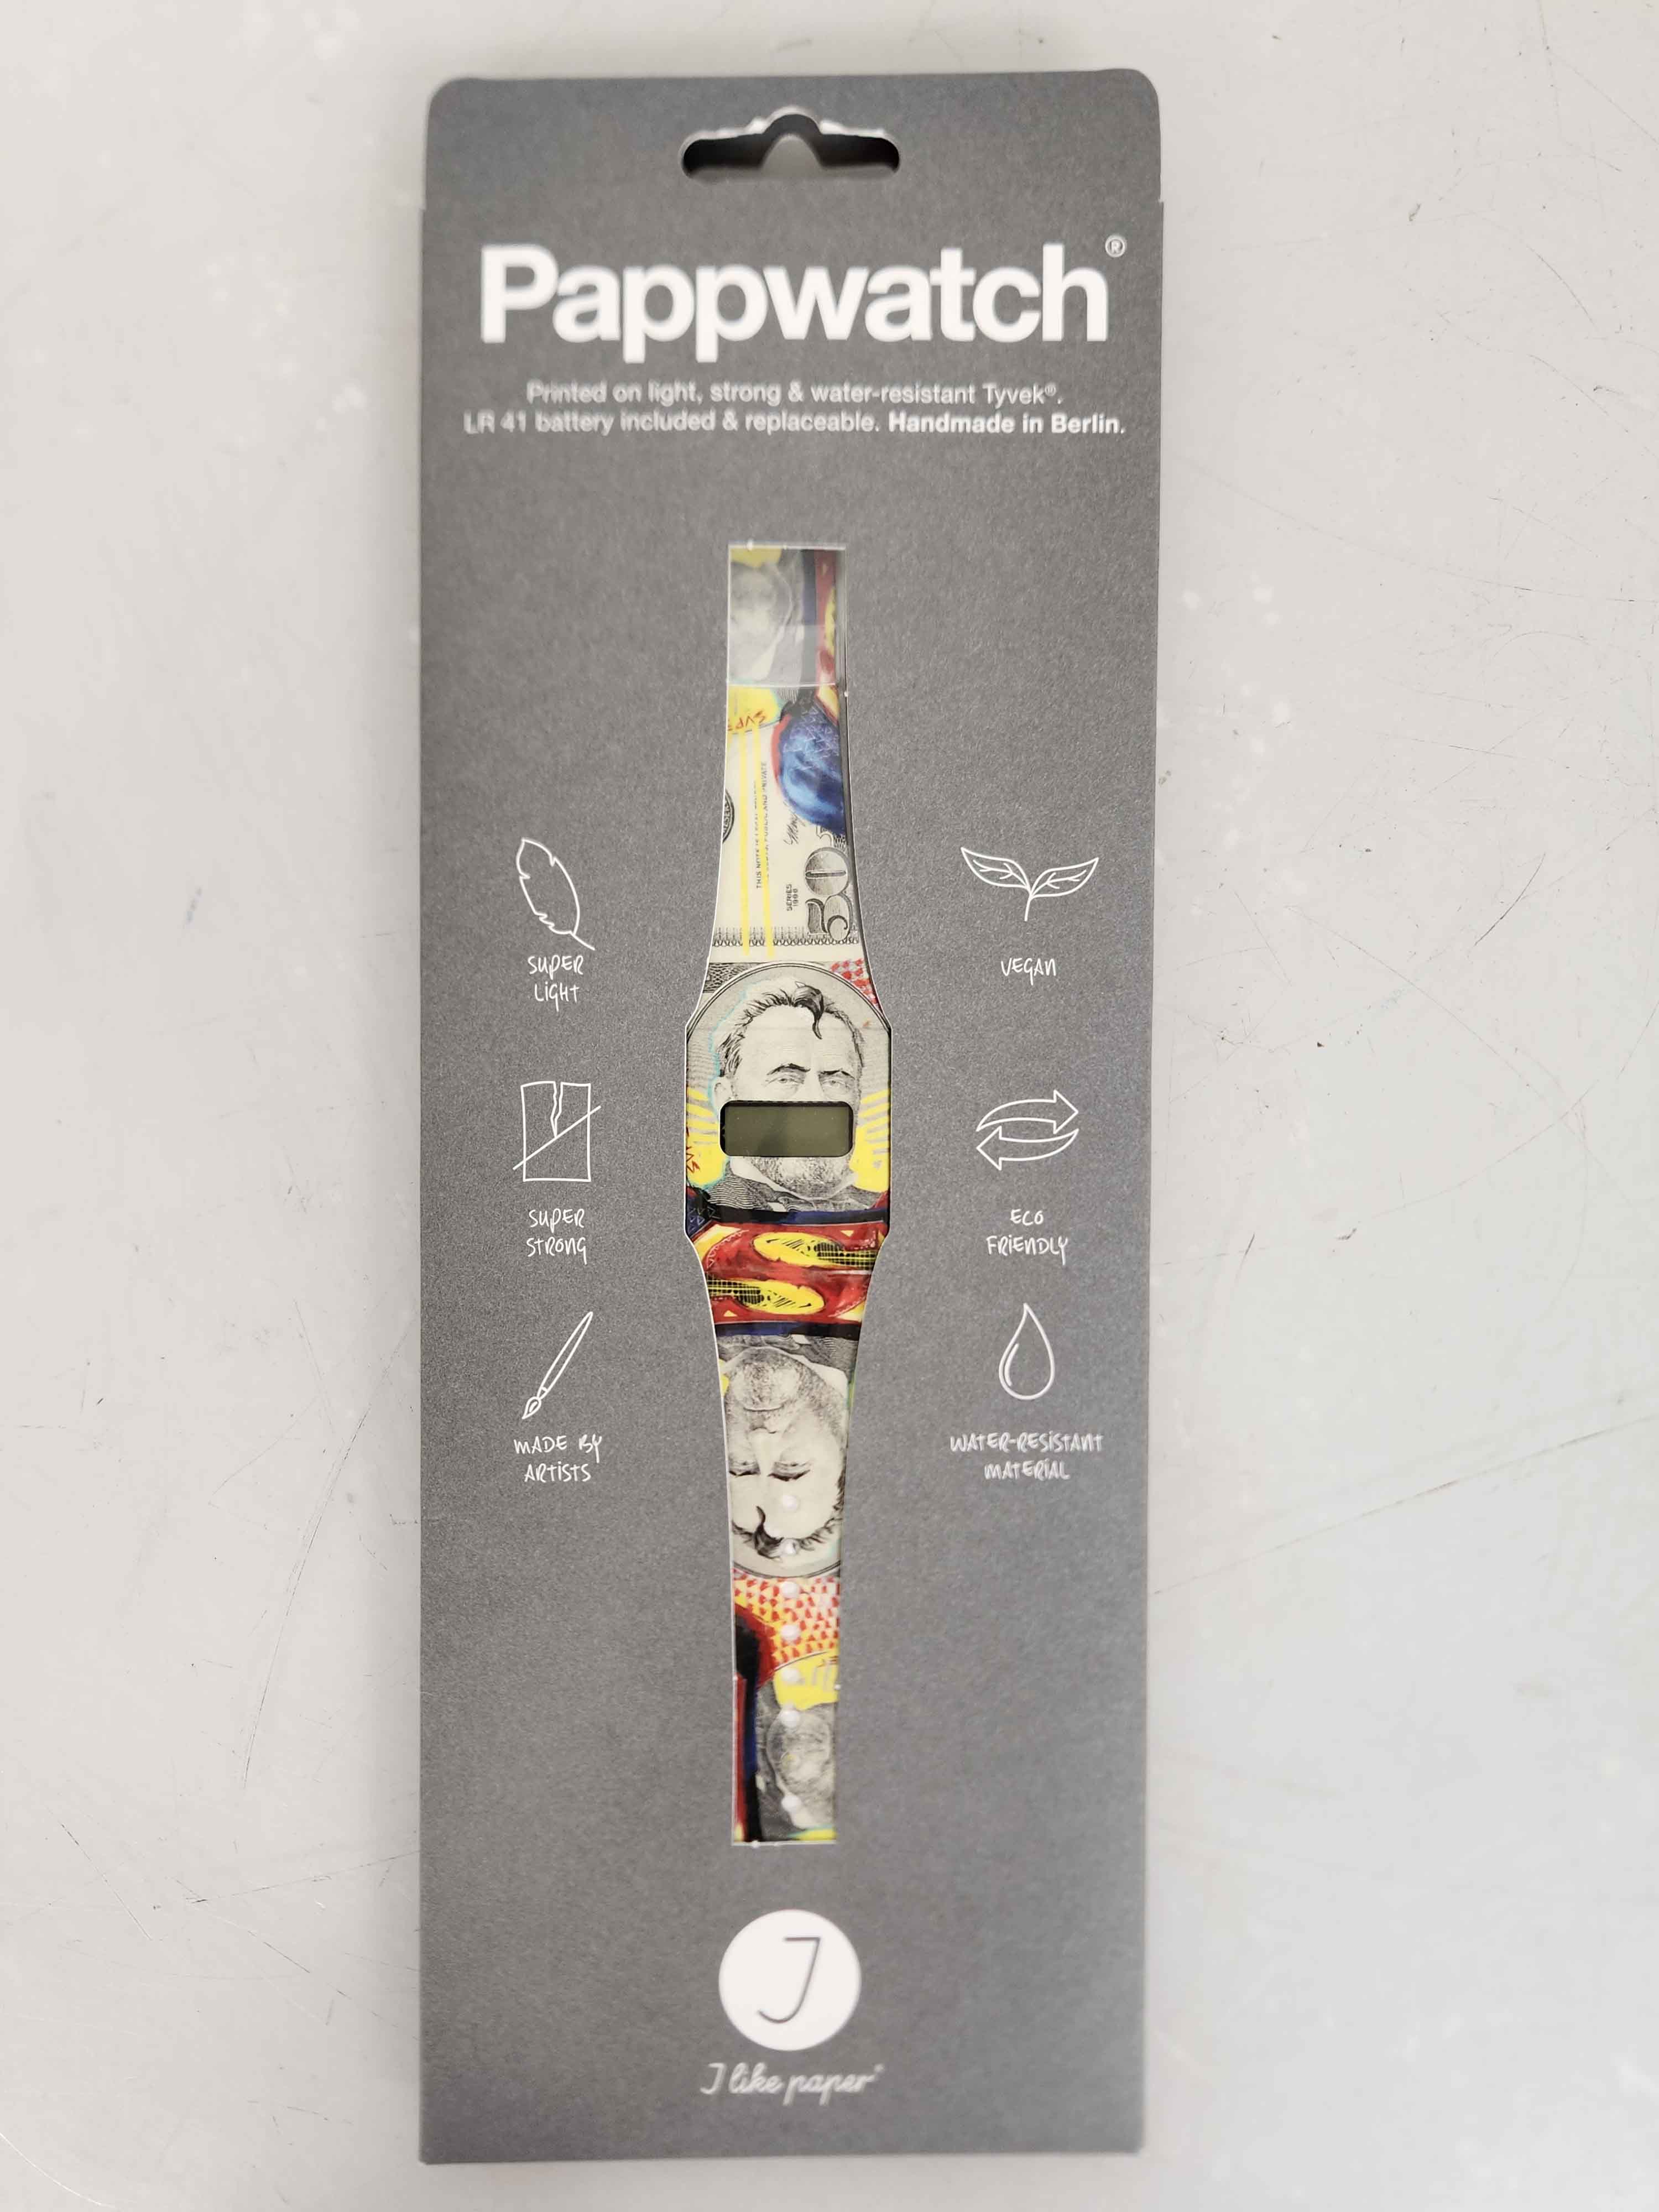 Pappwatch "Man of Paper" Digital Paper Watch